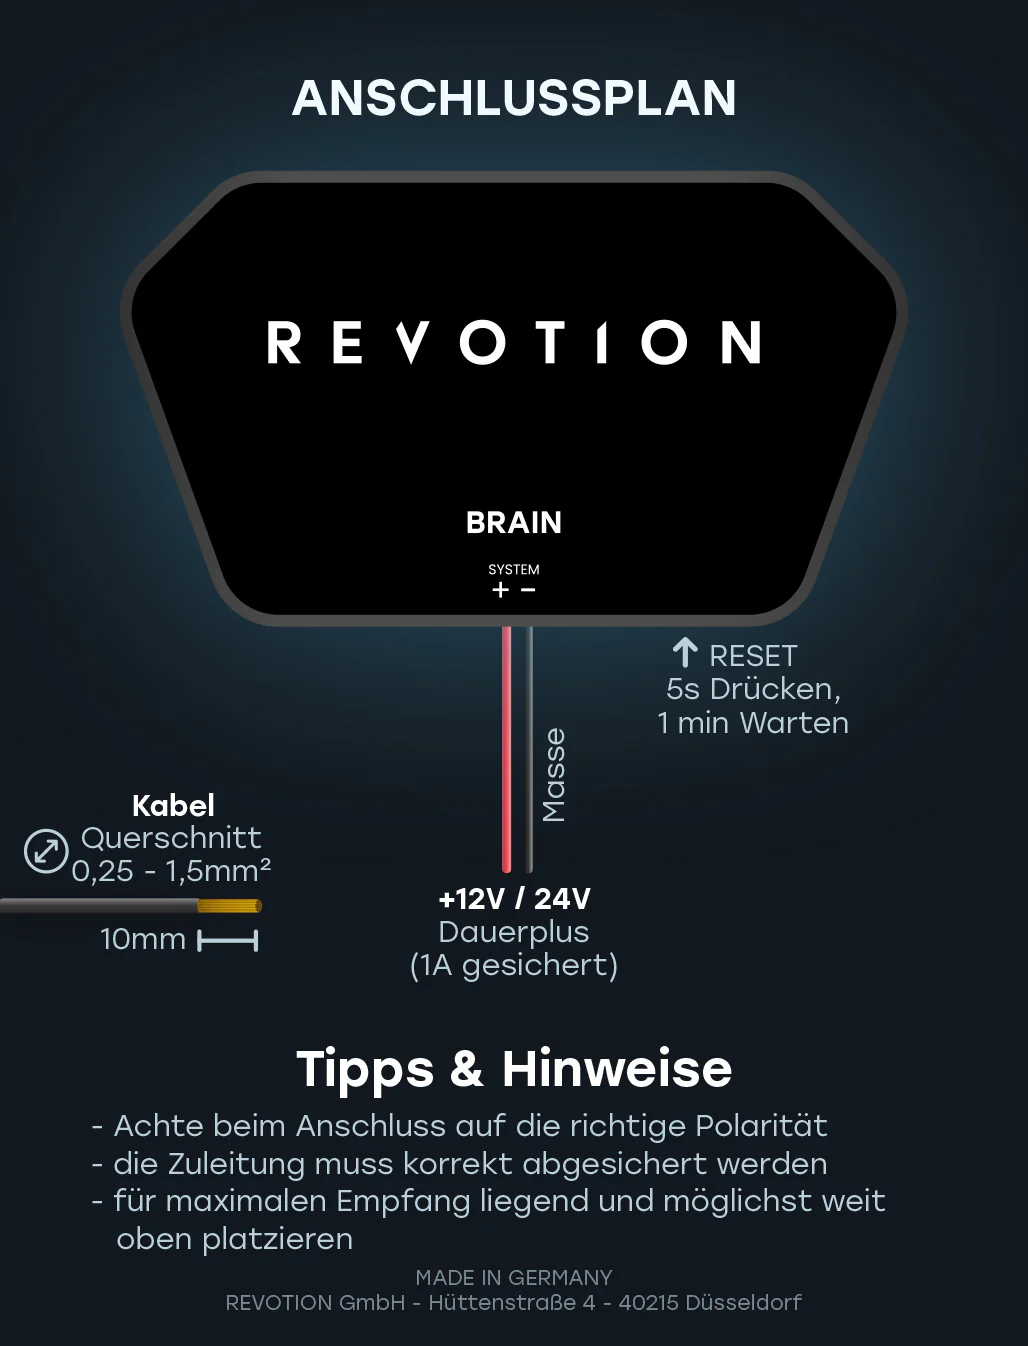 Anschlussplan Revotion Brain